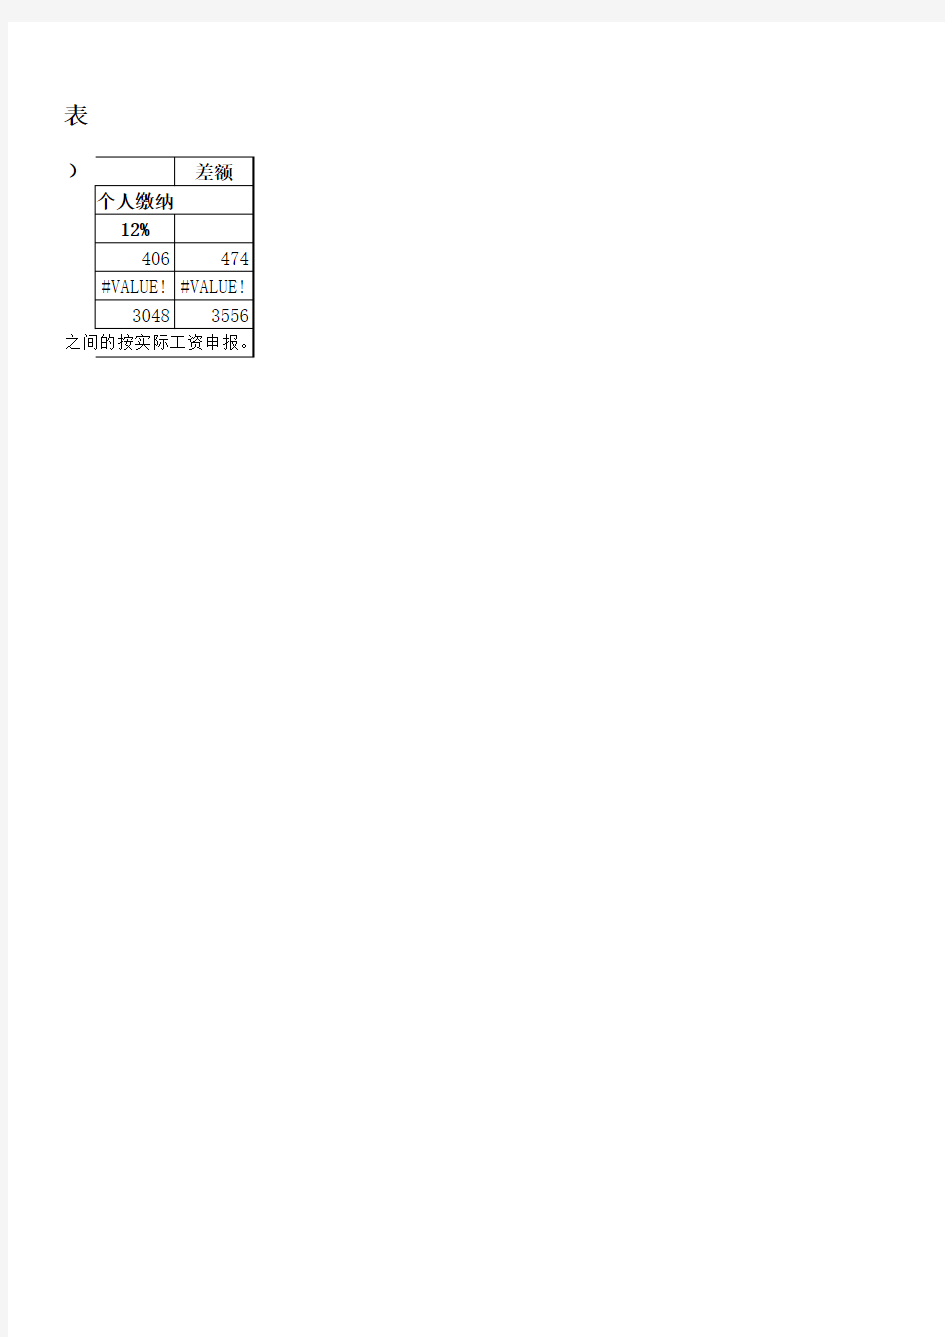 [自动公式表]北京市2018年7月-2019年6月社保公积金缴纳基数表